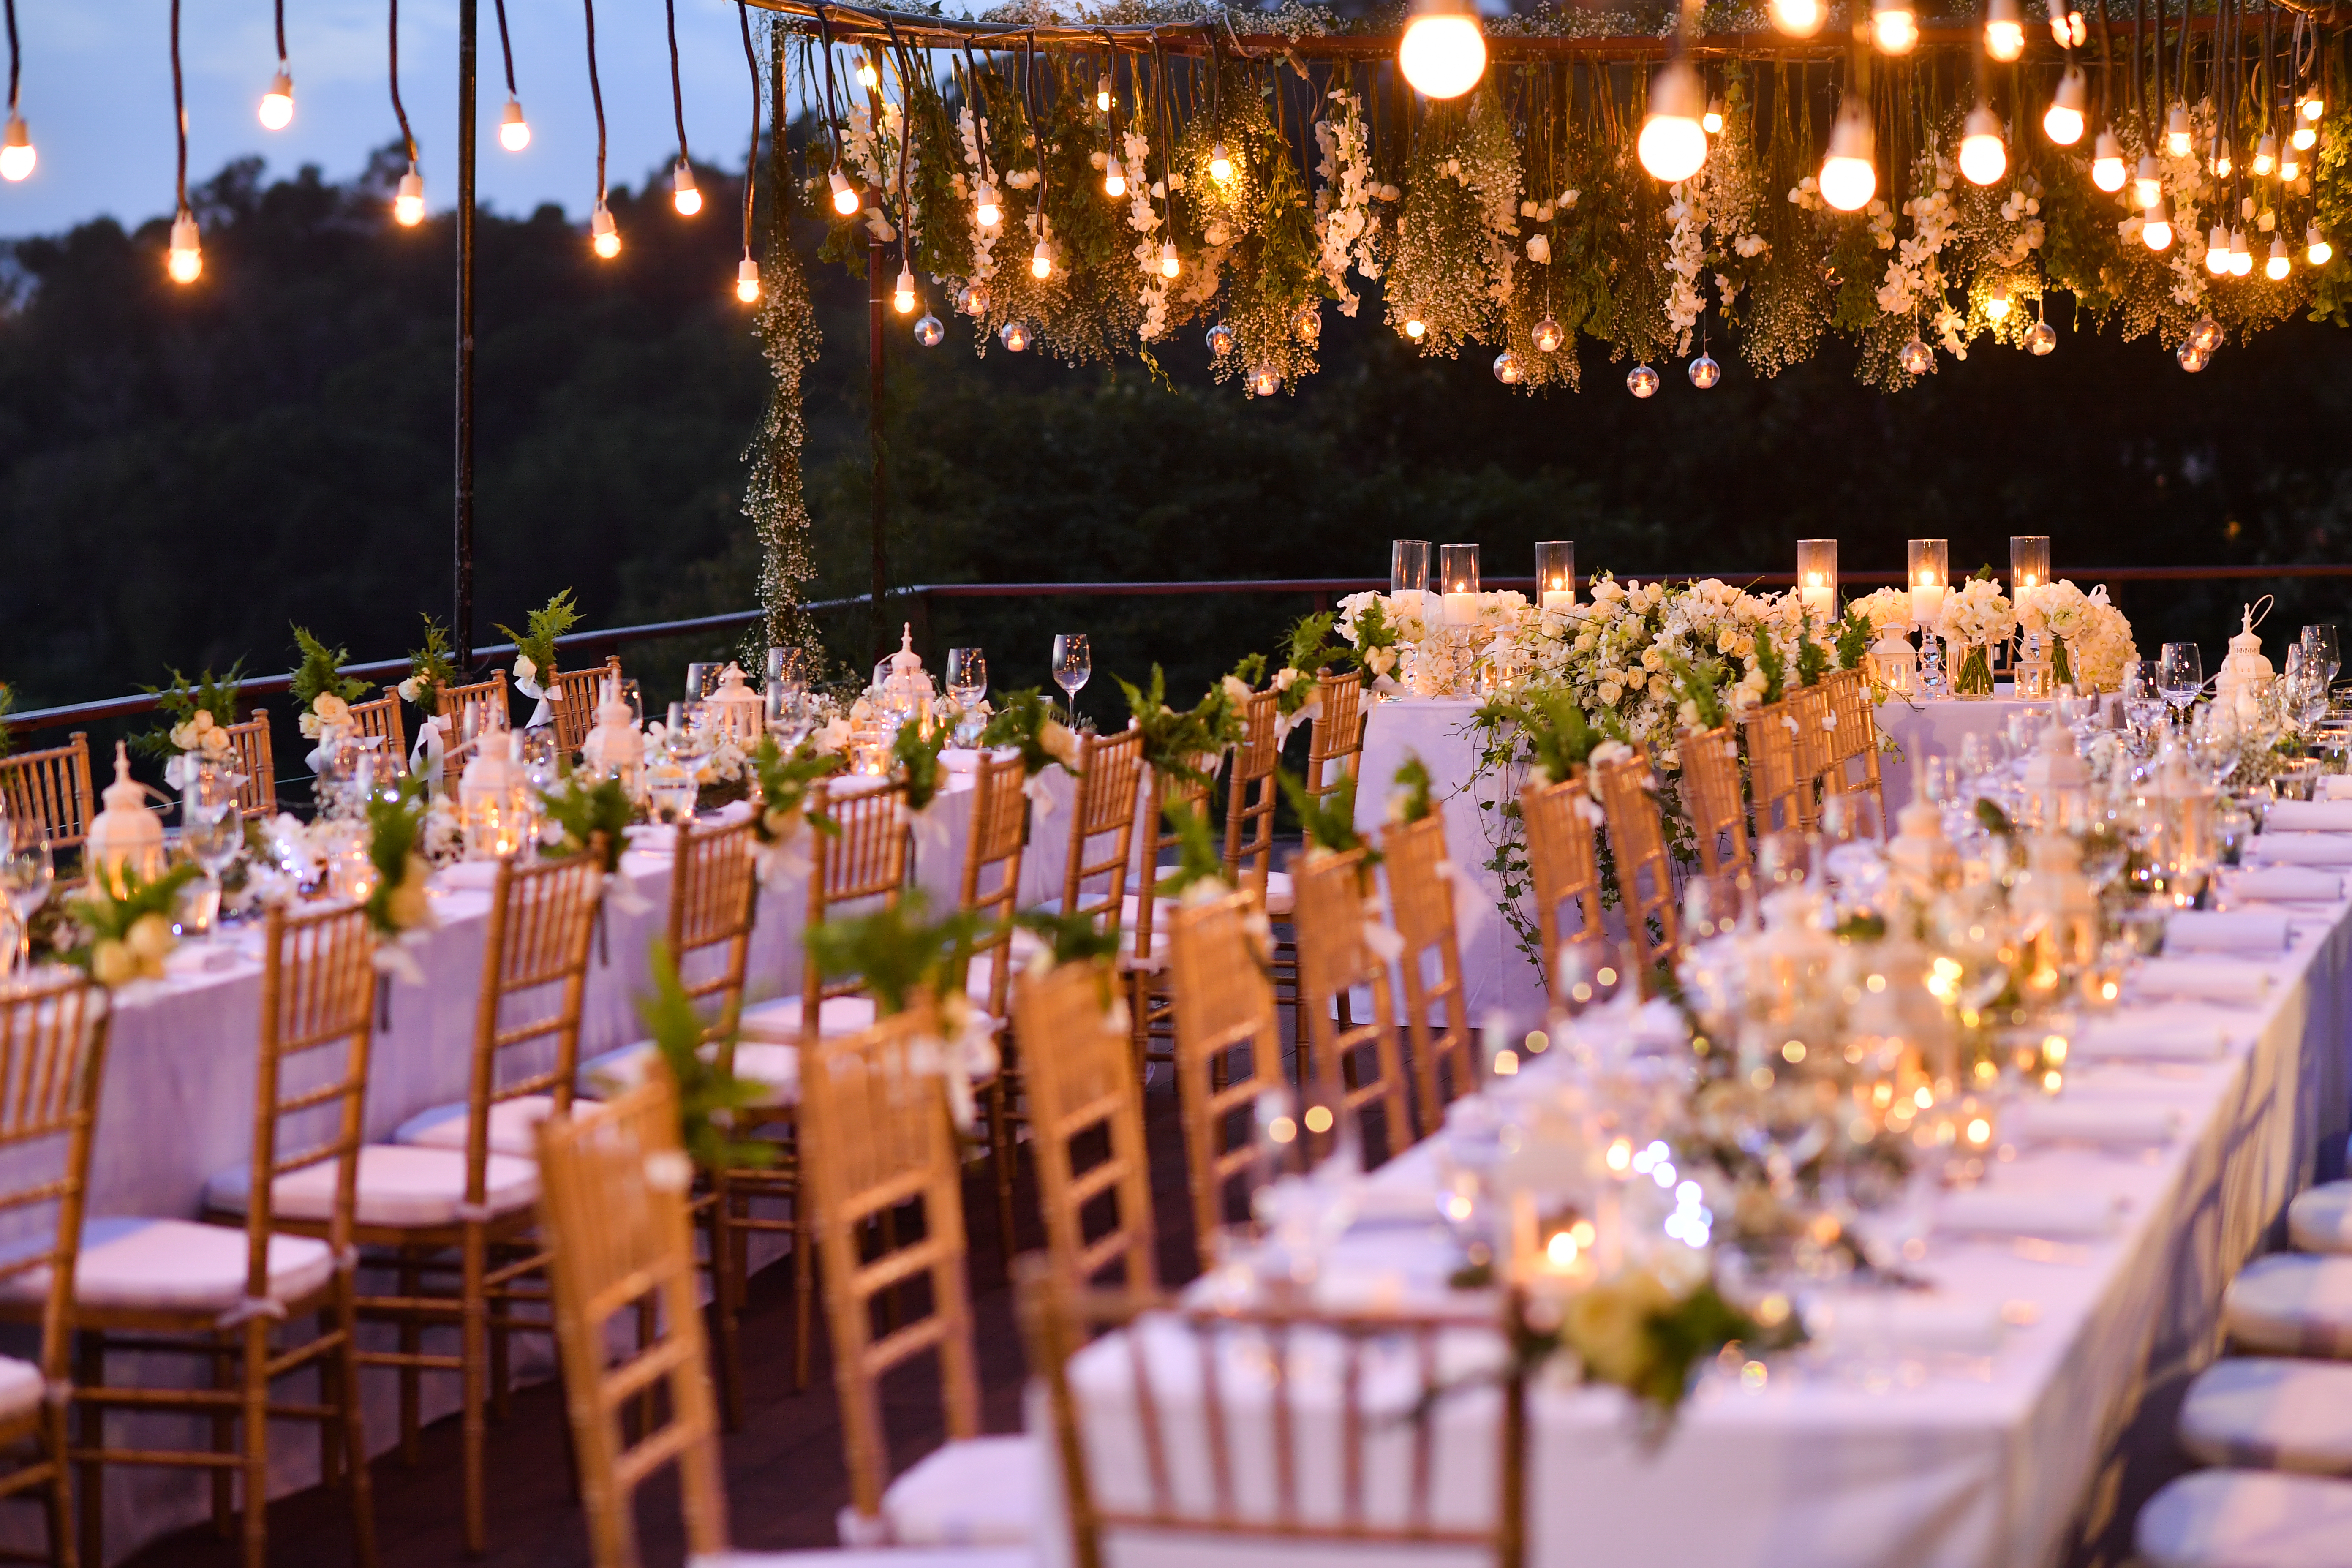 A reception dinner setup | Source: Shutterstock